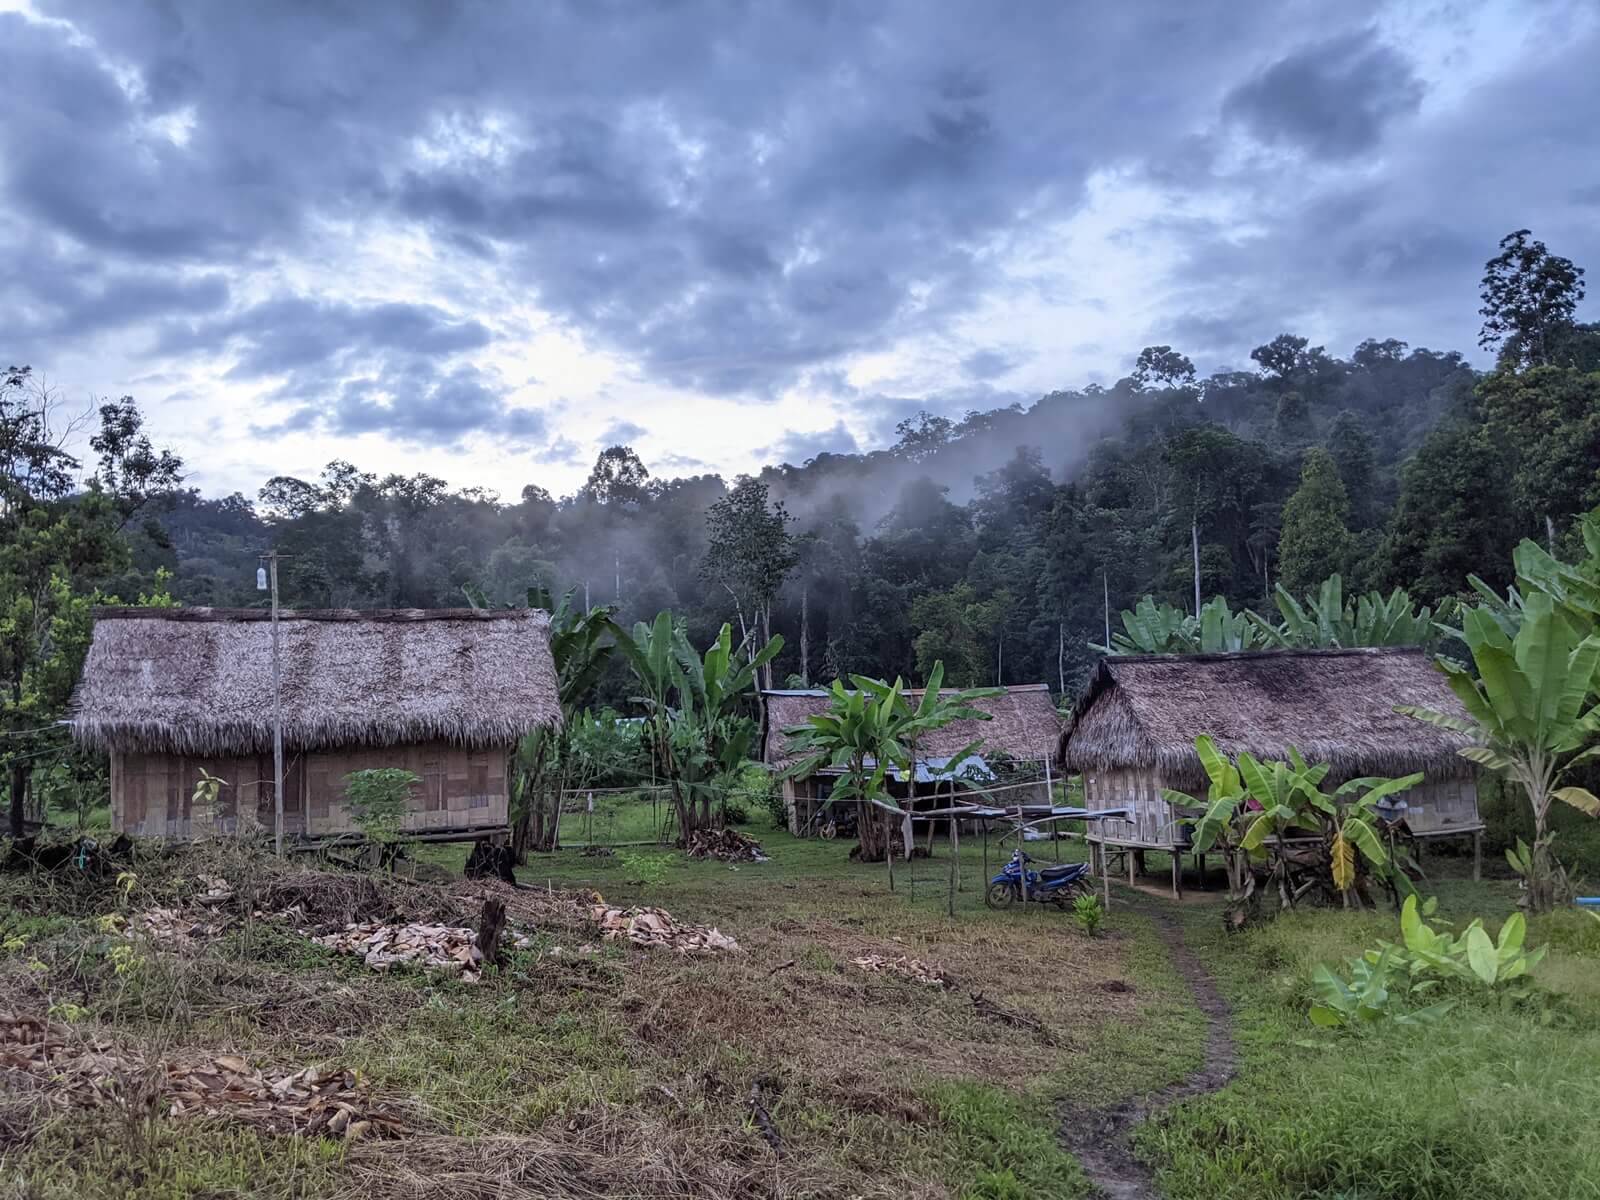 Kampung Kaloi in the Gunung Stong Selatan Forest Reserve, Kelantan, is home to Orang Asli of the Temiar tribe. (YH Law)